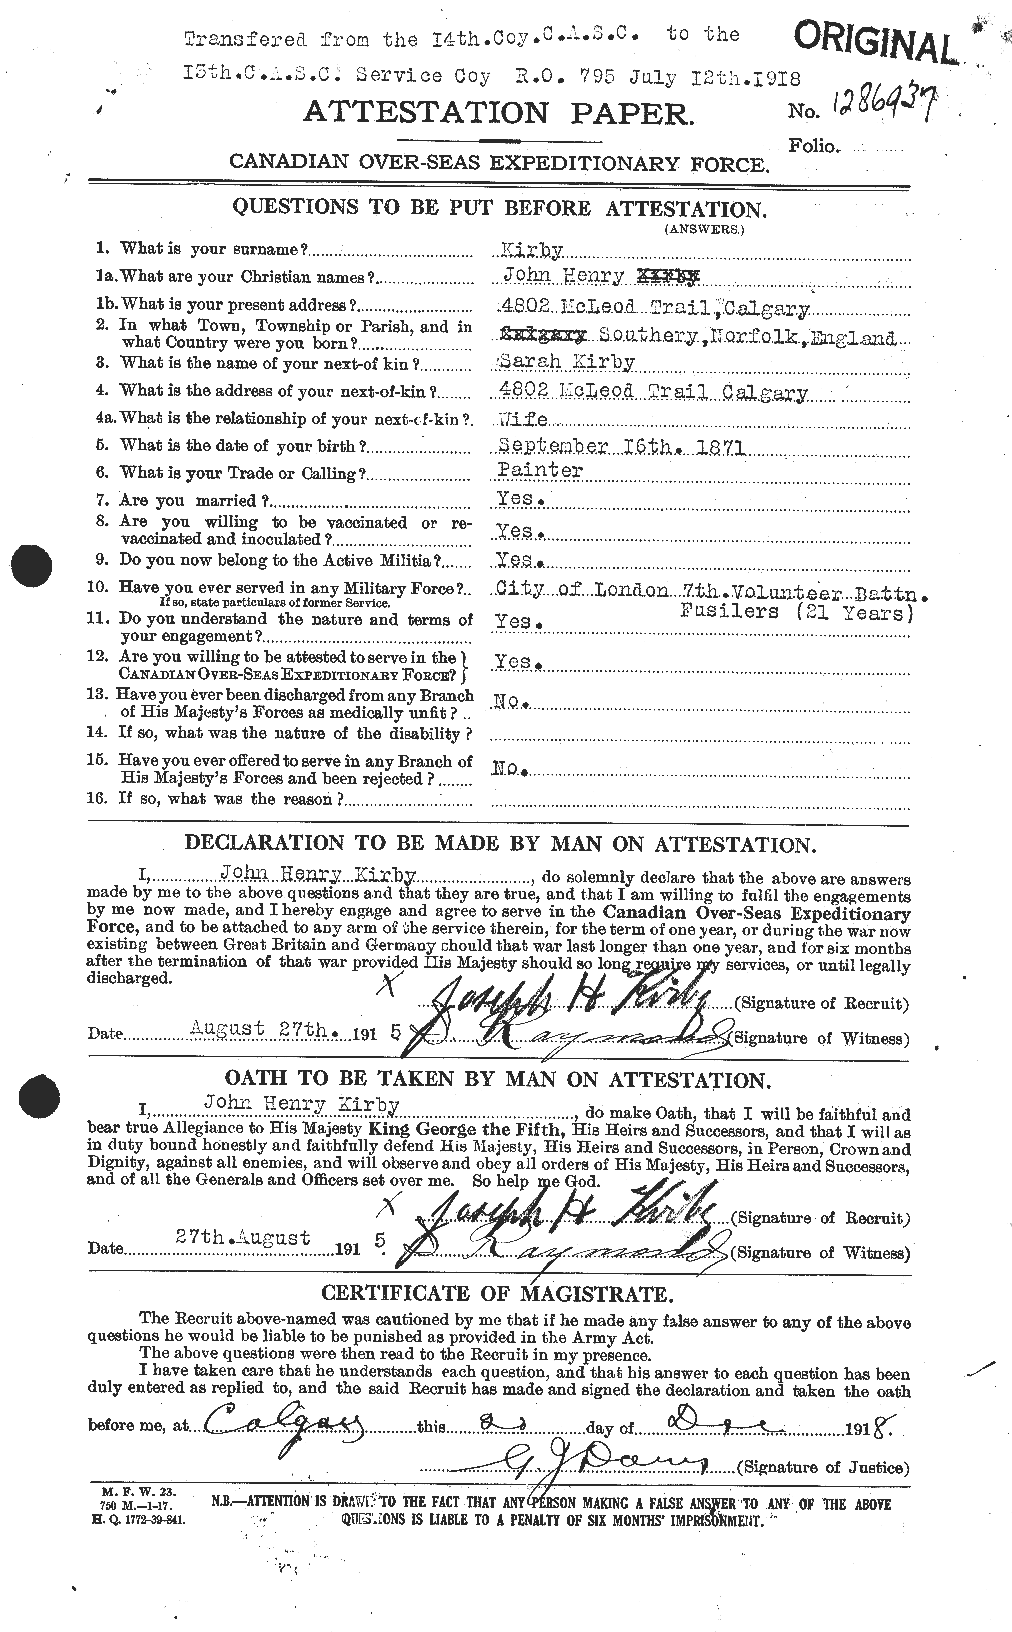 Dossiers du Personnel de la Première Guerre mondiale - CEC 437231a